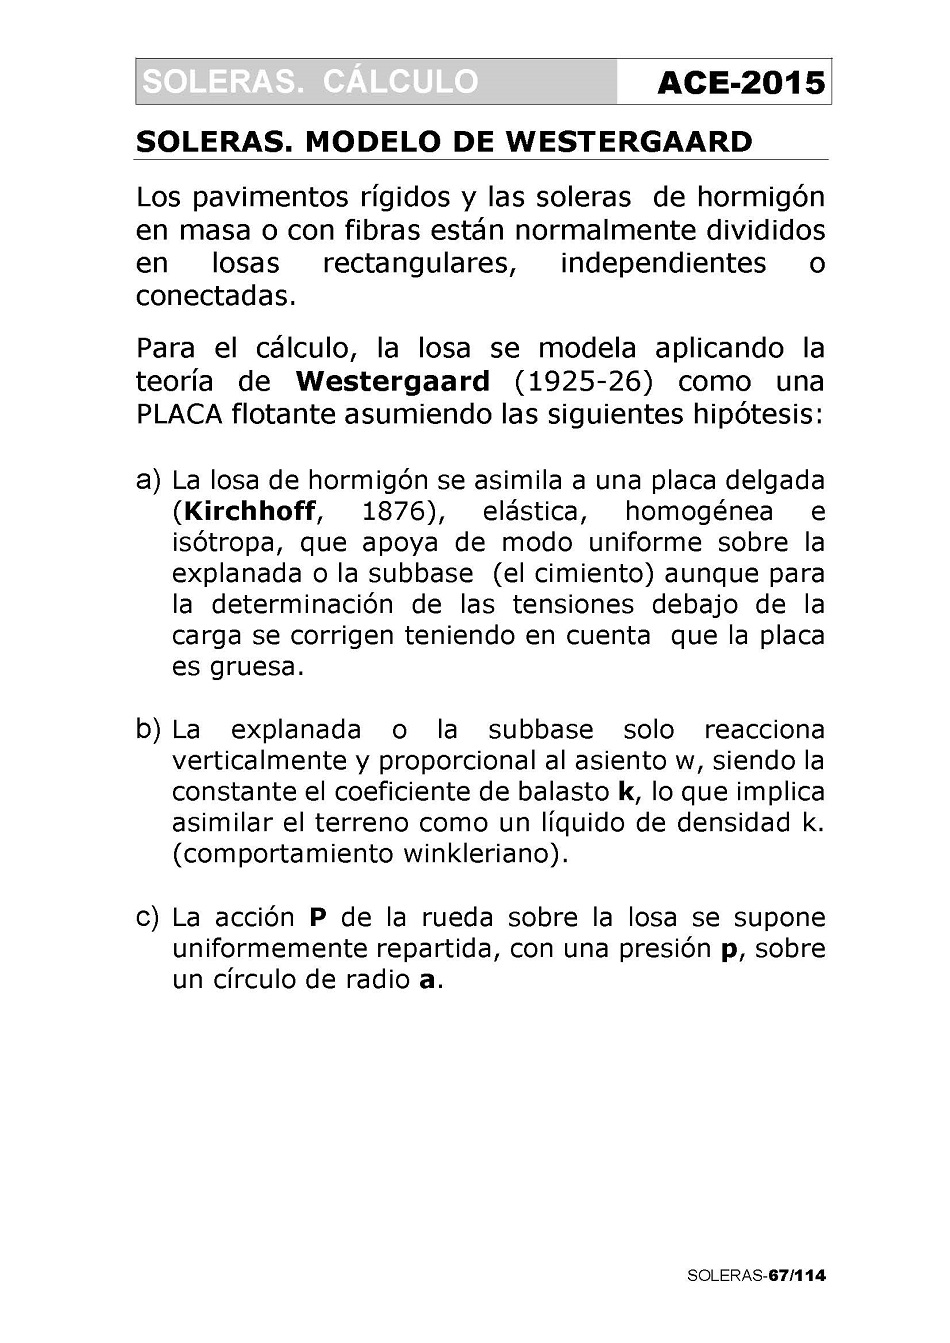 Cálculo de Soleras de Hormigón. Página 67